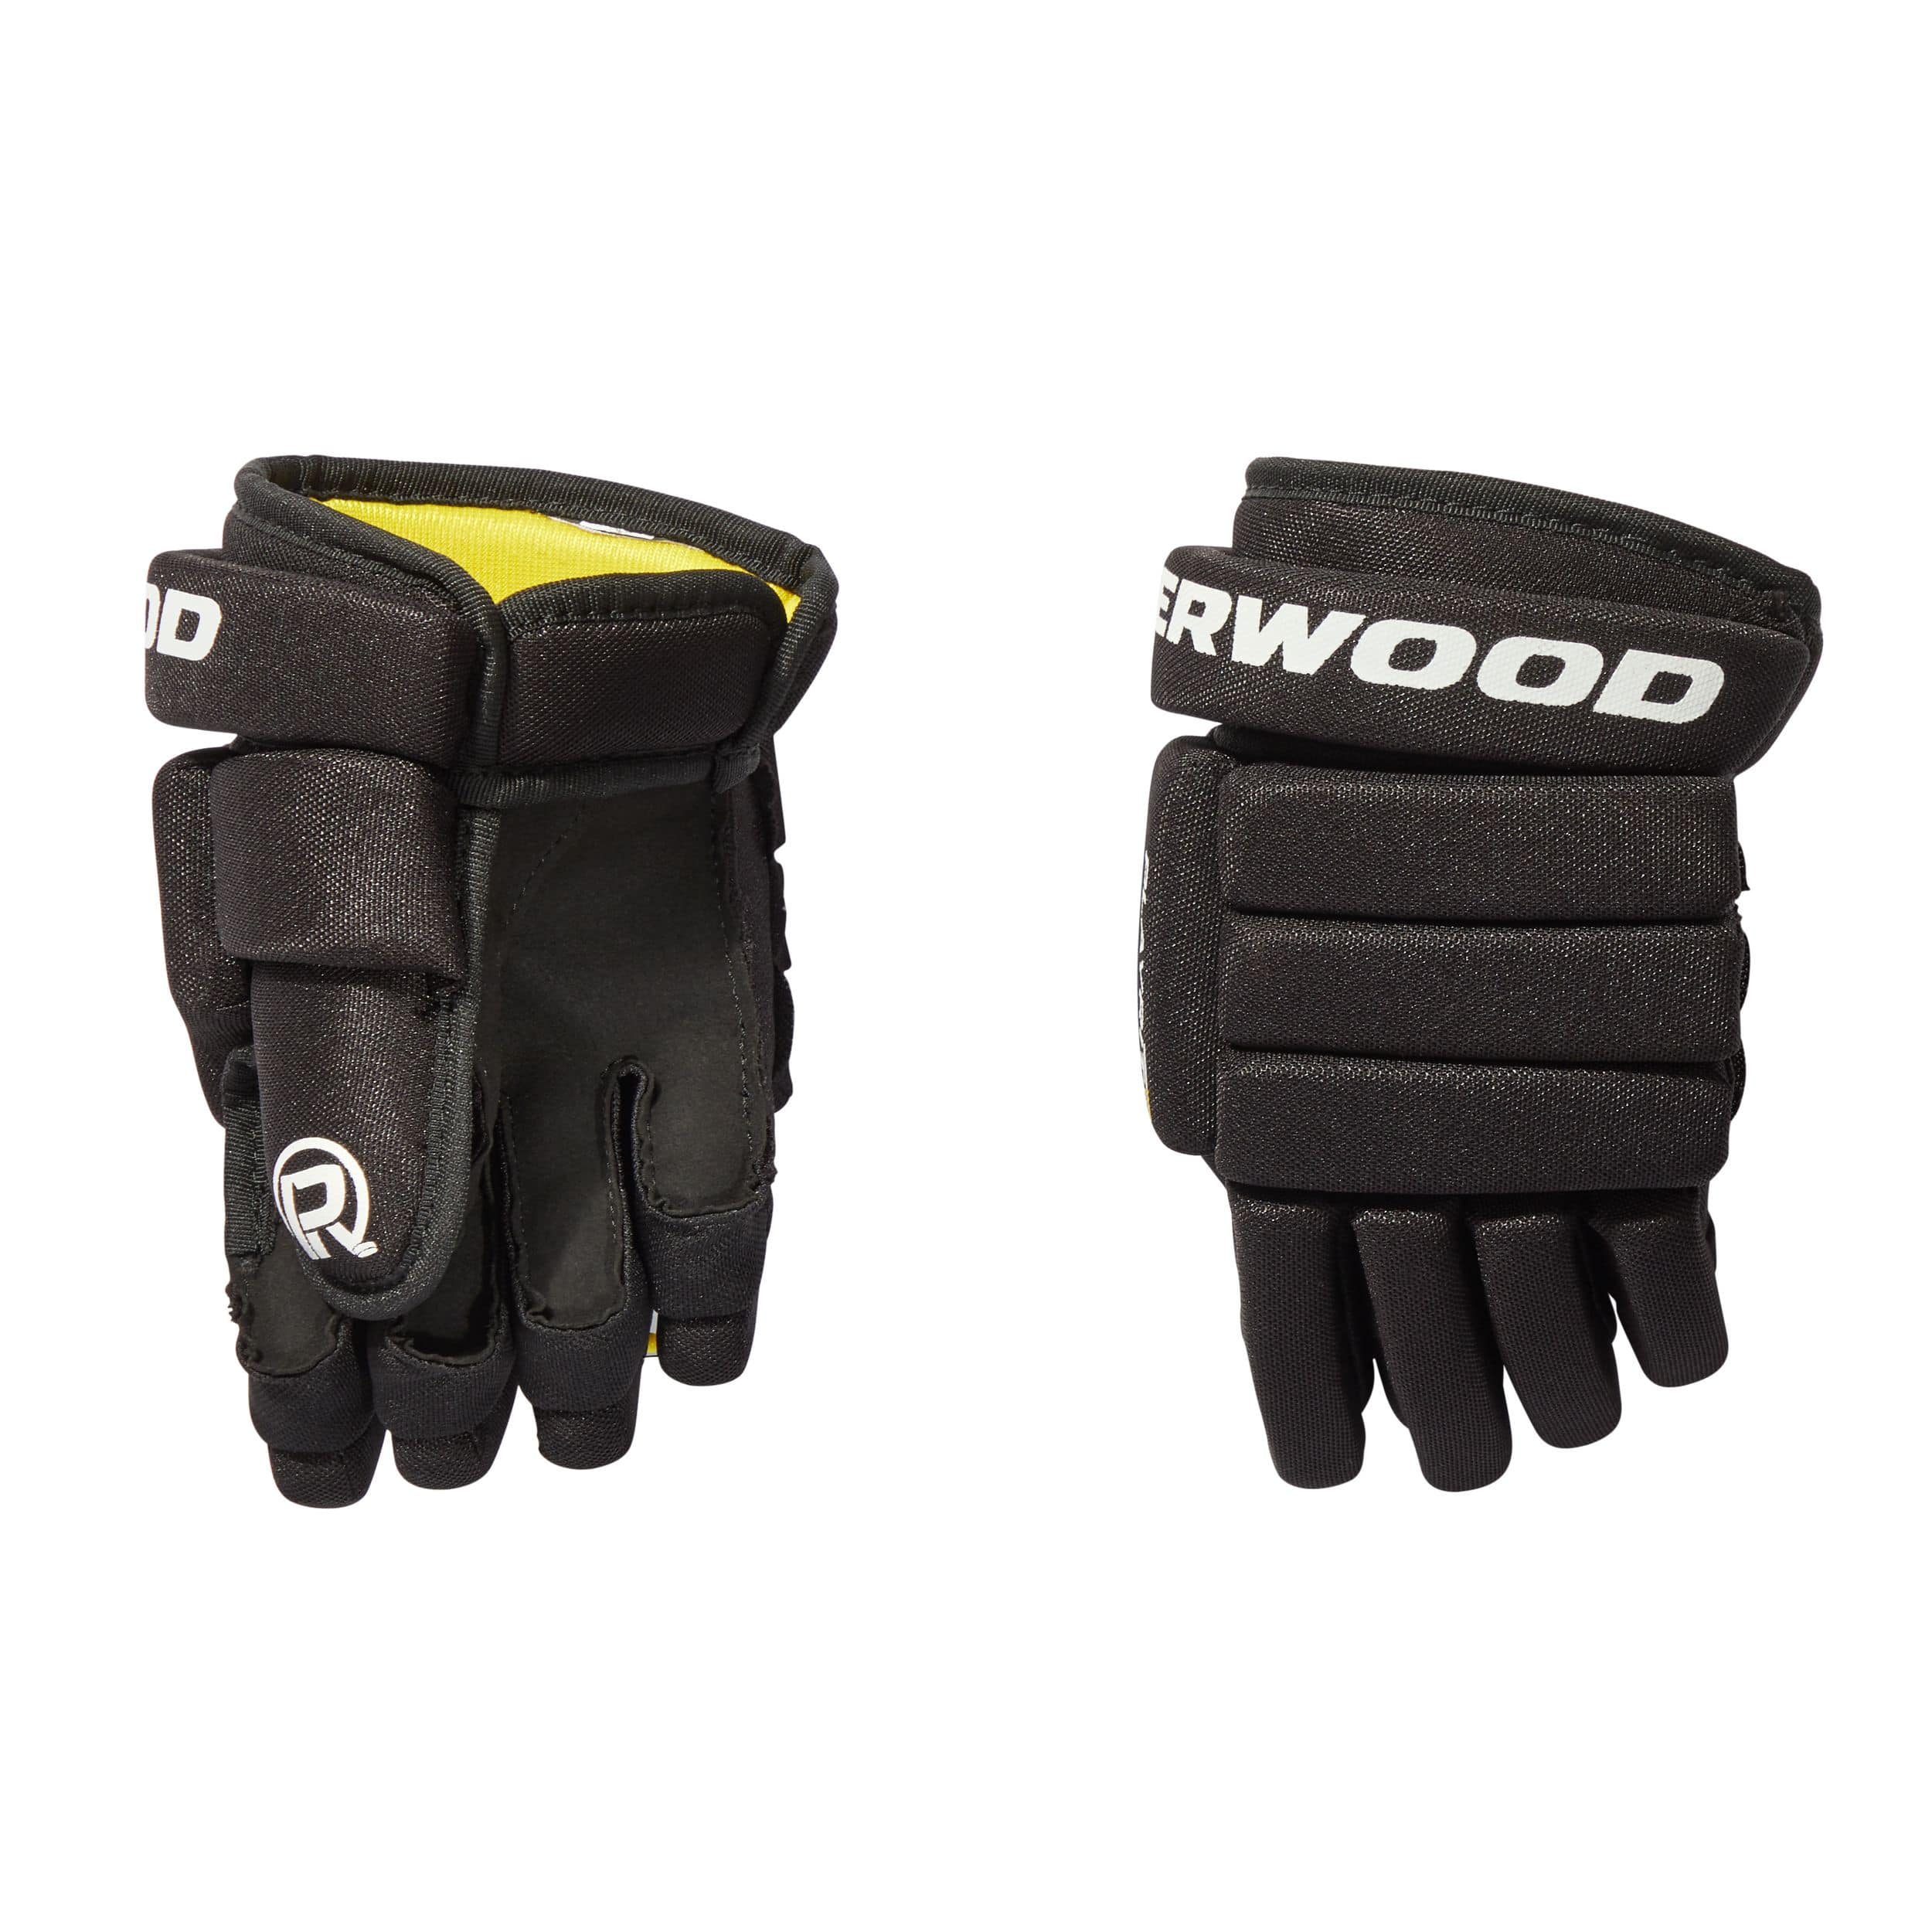 Sherwood Playrite Basic Hockey Protective Kit, Youth, Black/Yellow,  Assorted Sizes